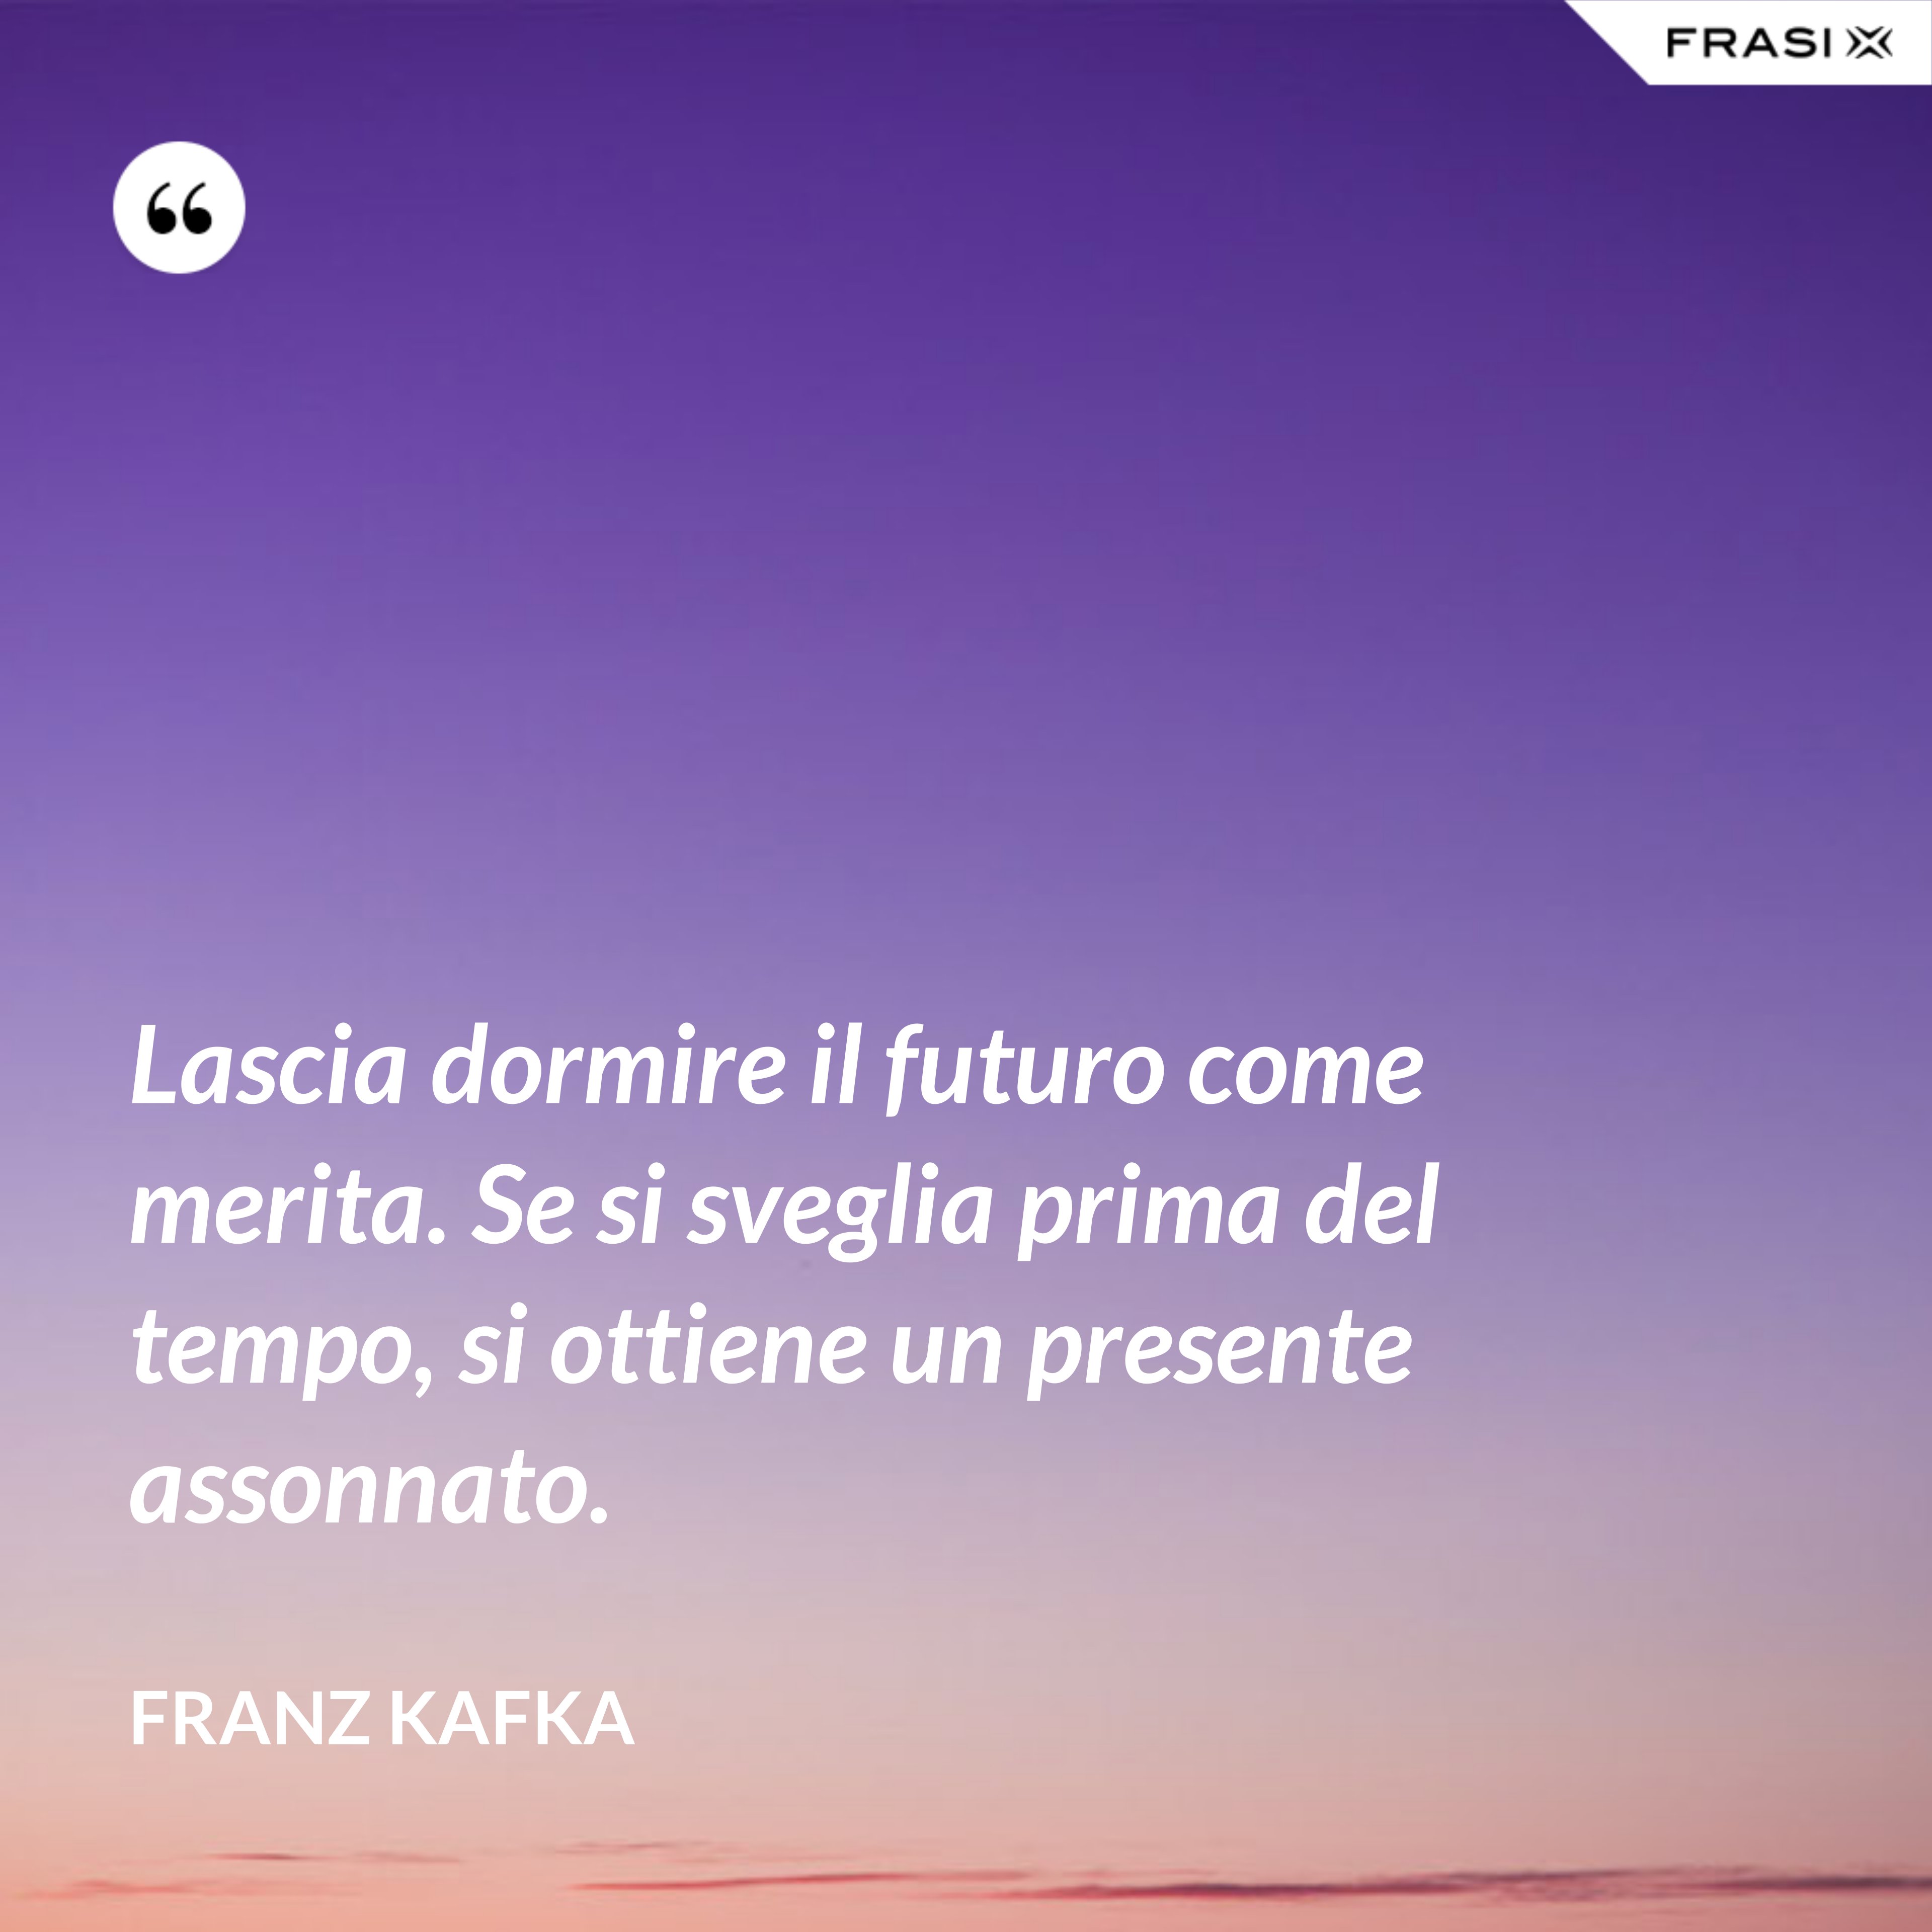 Lascia dormire il futuro come merita. Se si sveglia prima del tempo, si ottiene un presente assonnato. - Franz Kafka